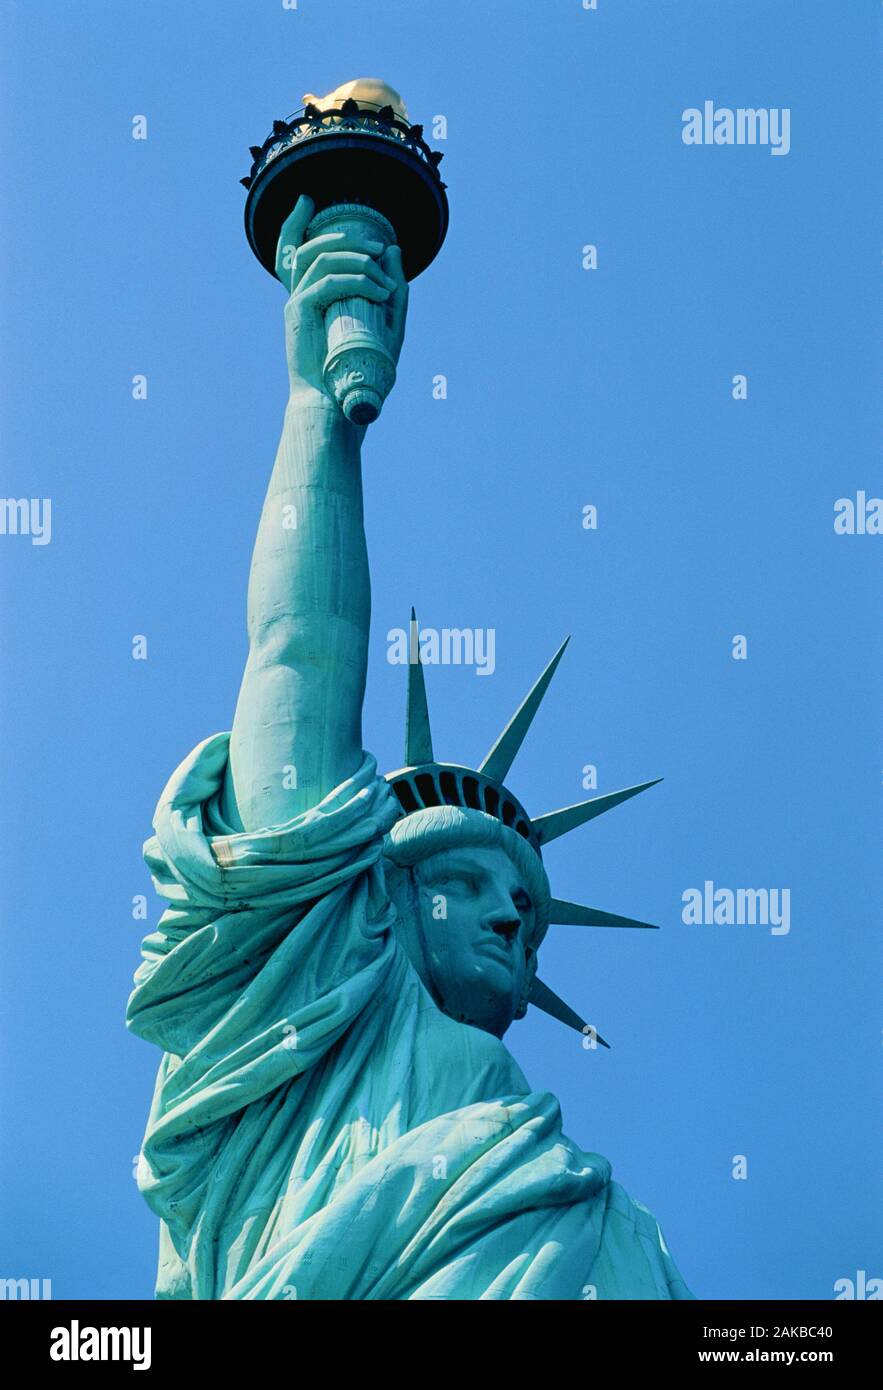 Statua della Libertà contro il cielo blu chiaro, New York City, Stati Uniti d'America Foto Stock